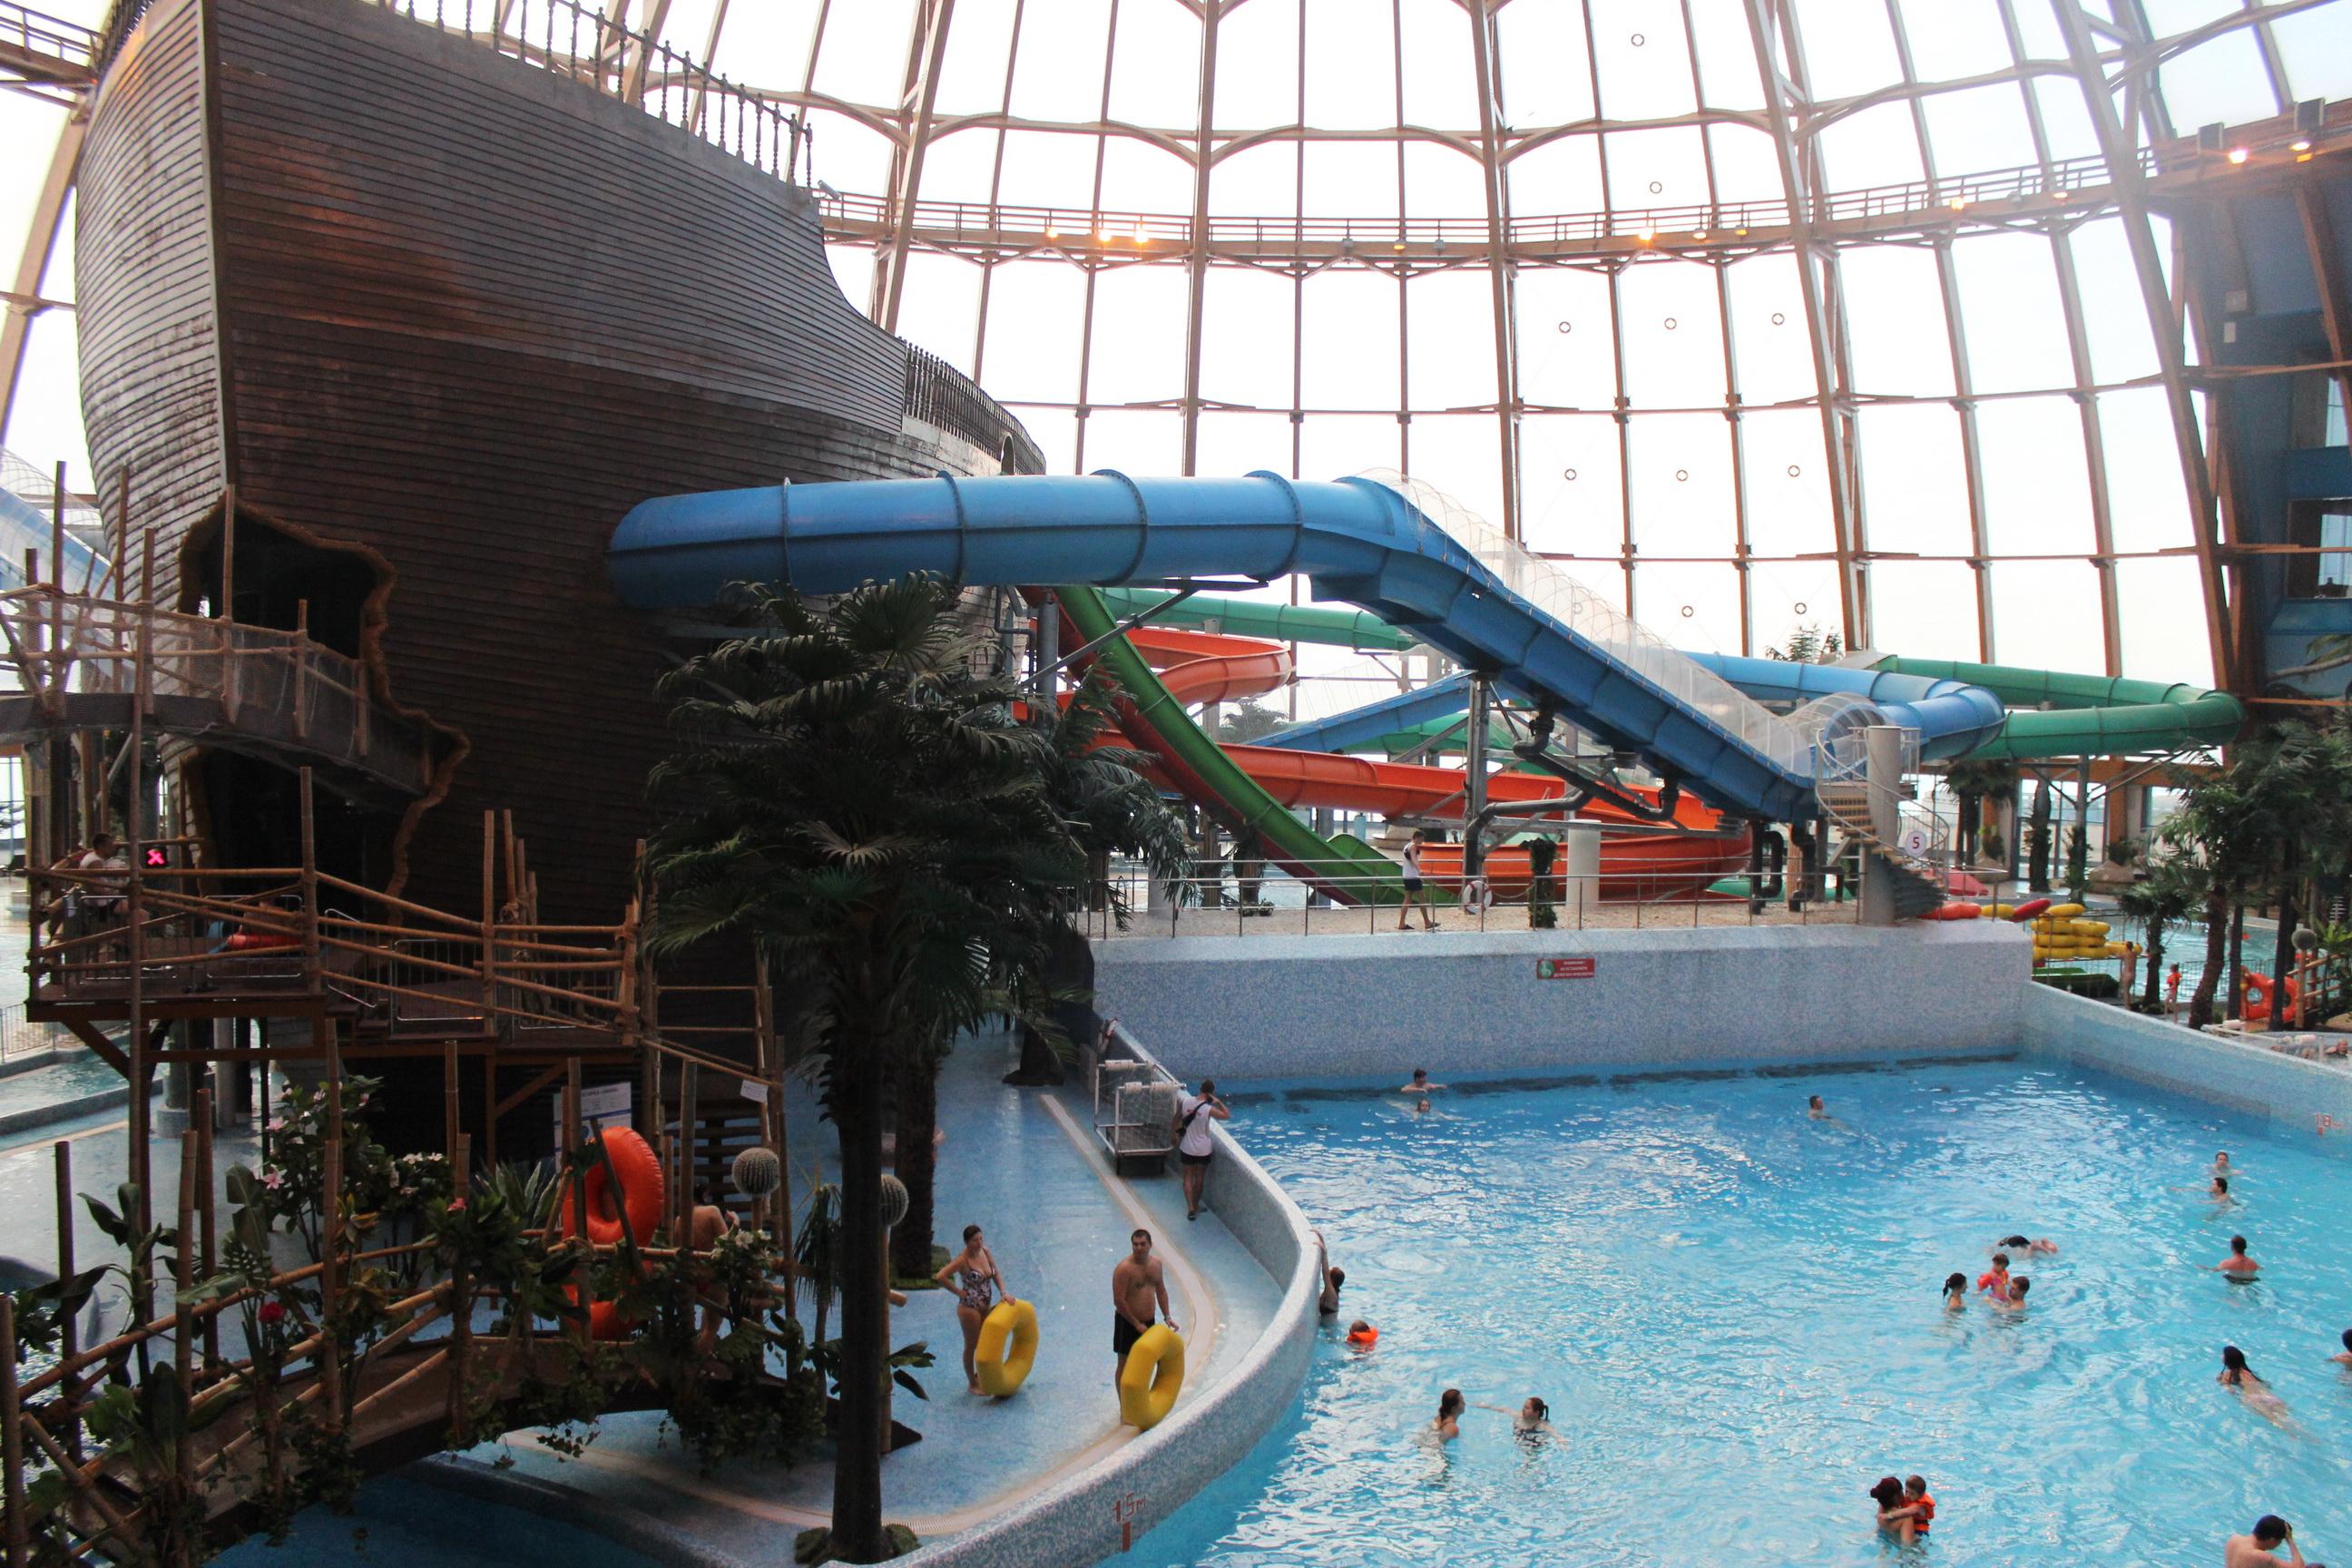 питерленд в санкт петербурге официальный аквапарк